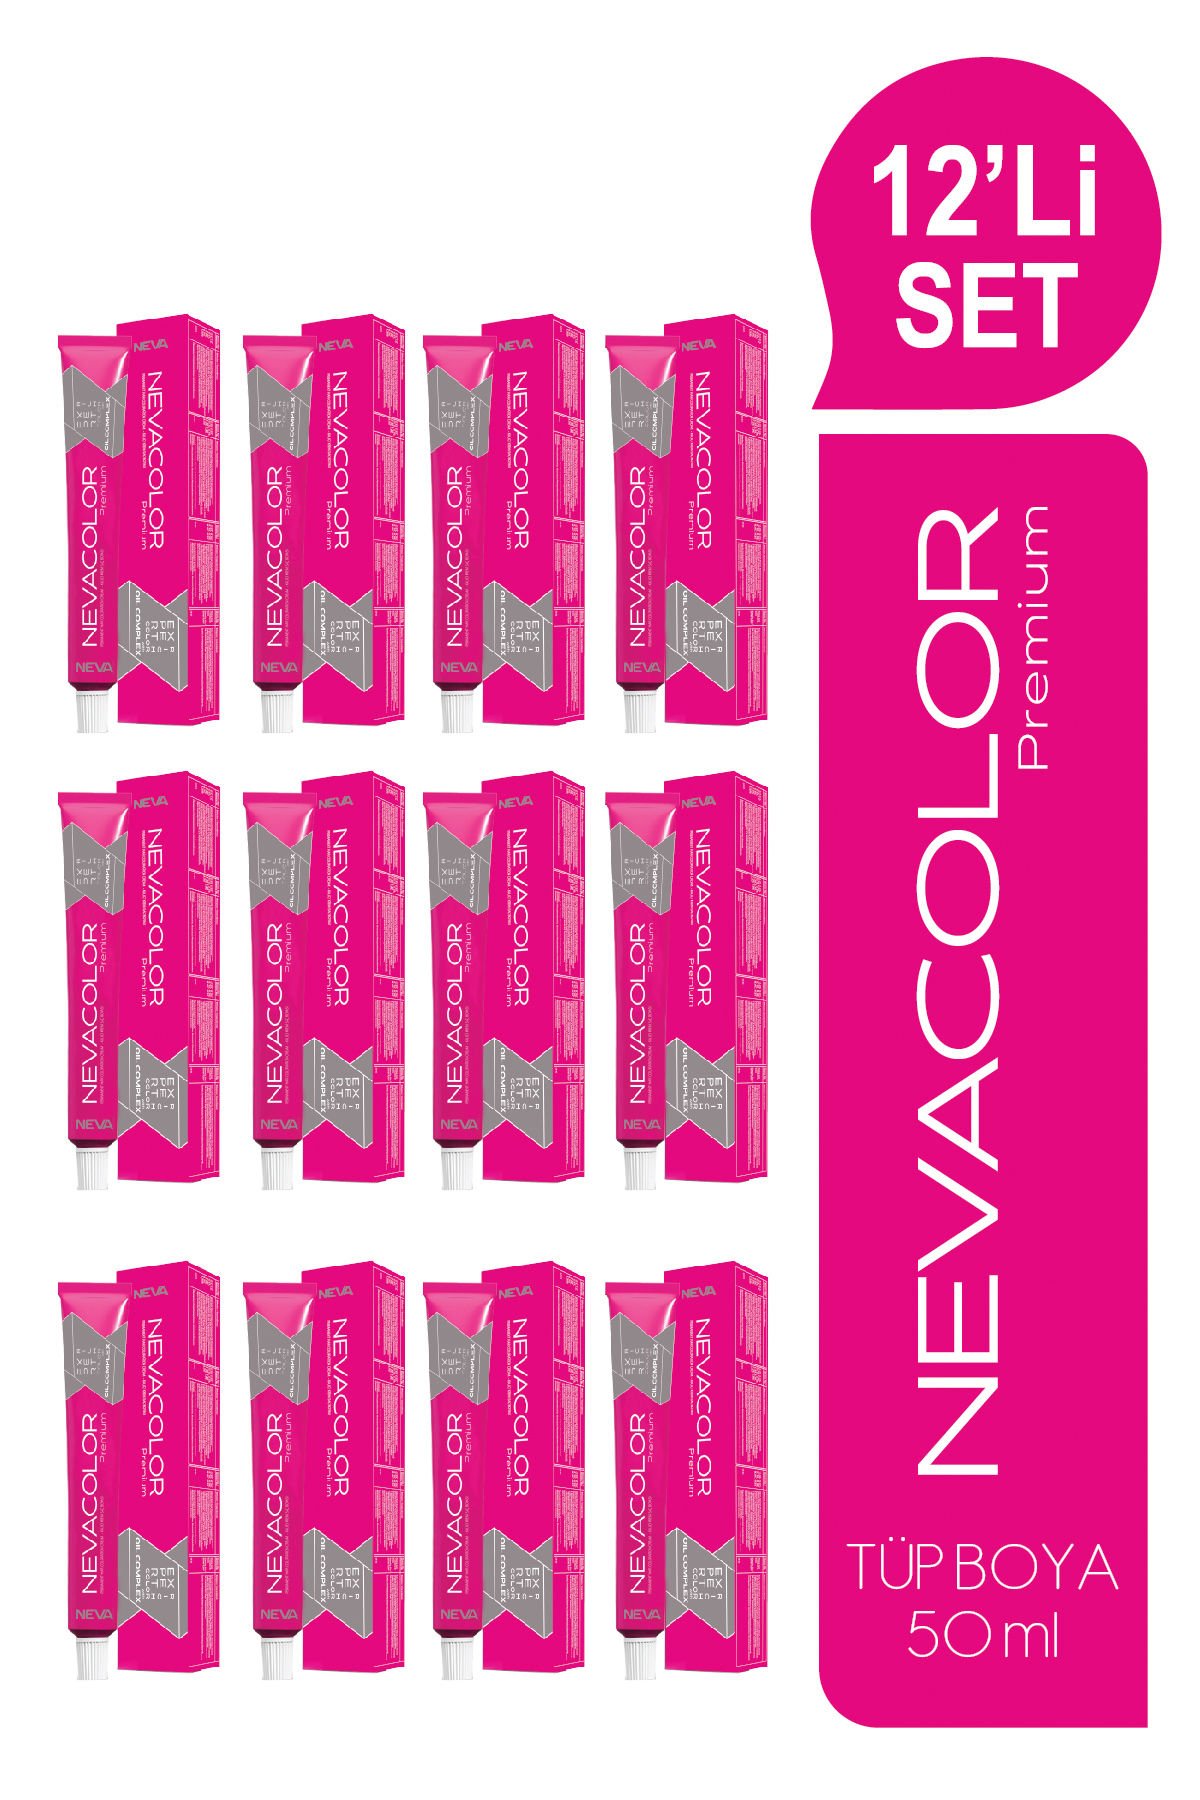 NEVACOLOR Premium 12'Lİ SET  9. ÇOK AÇIK KUMRAL Kalıcı Krem Saç Boyası (50ml x 12 adet)